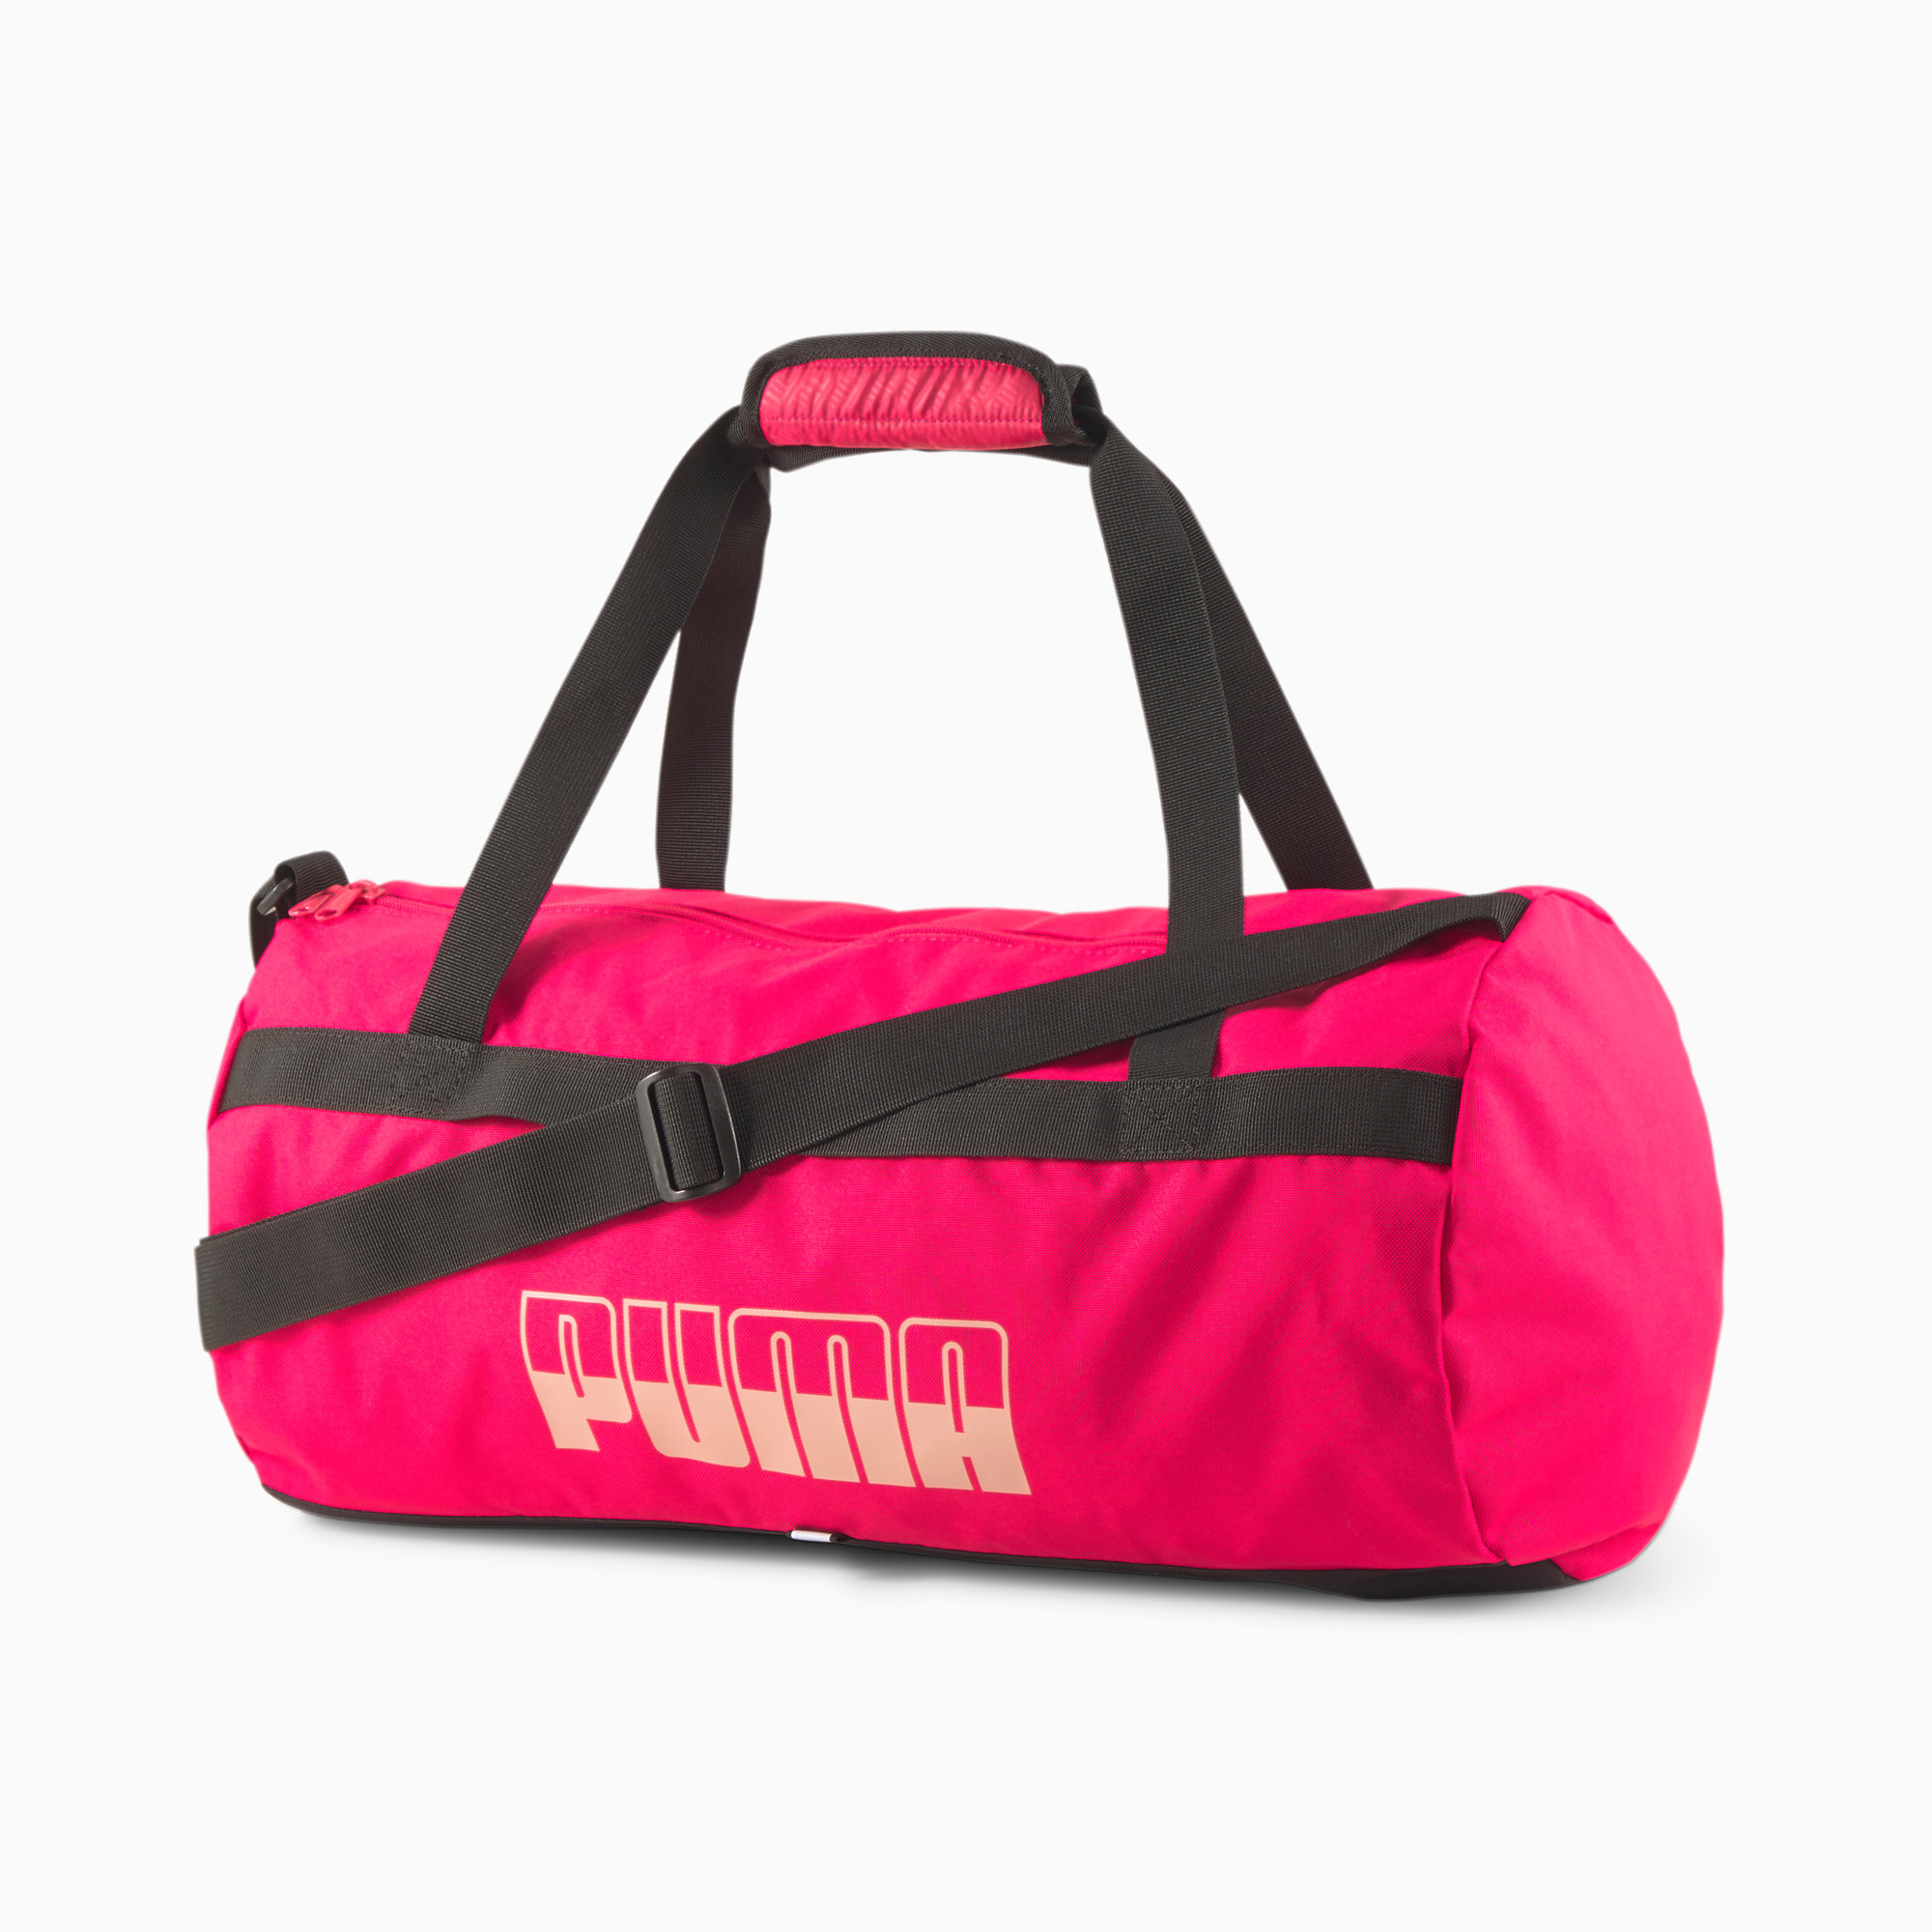 Puma сумка спортивная way